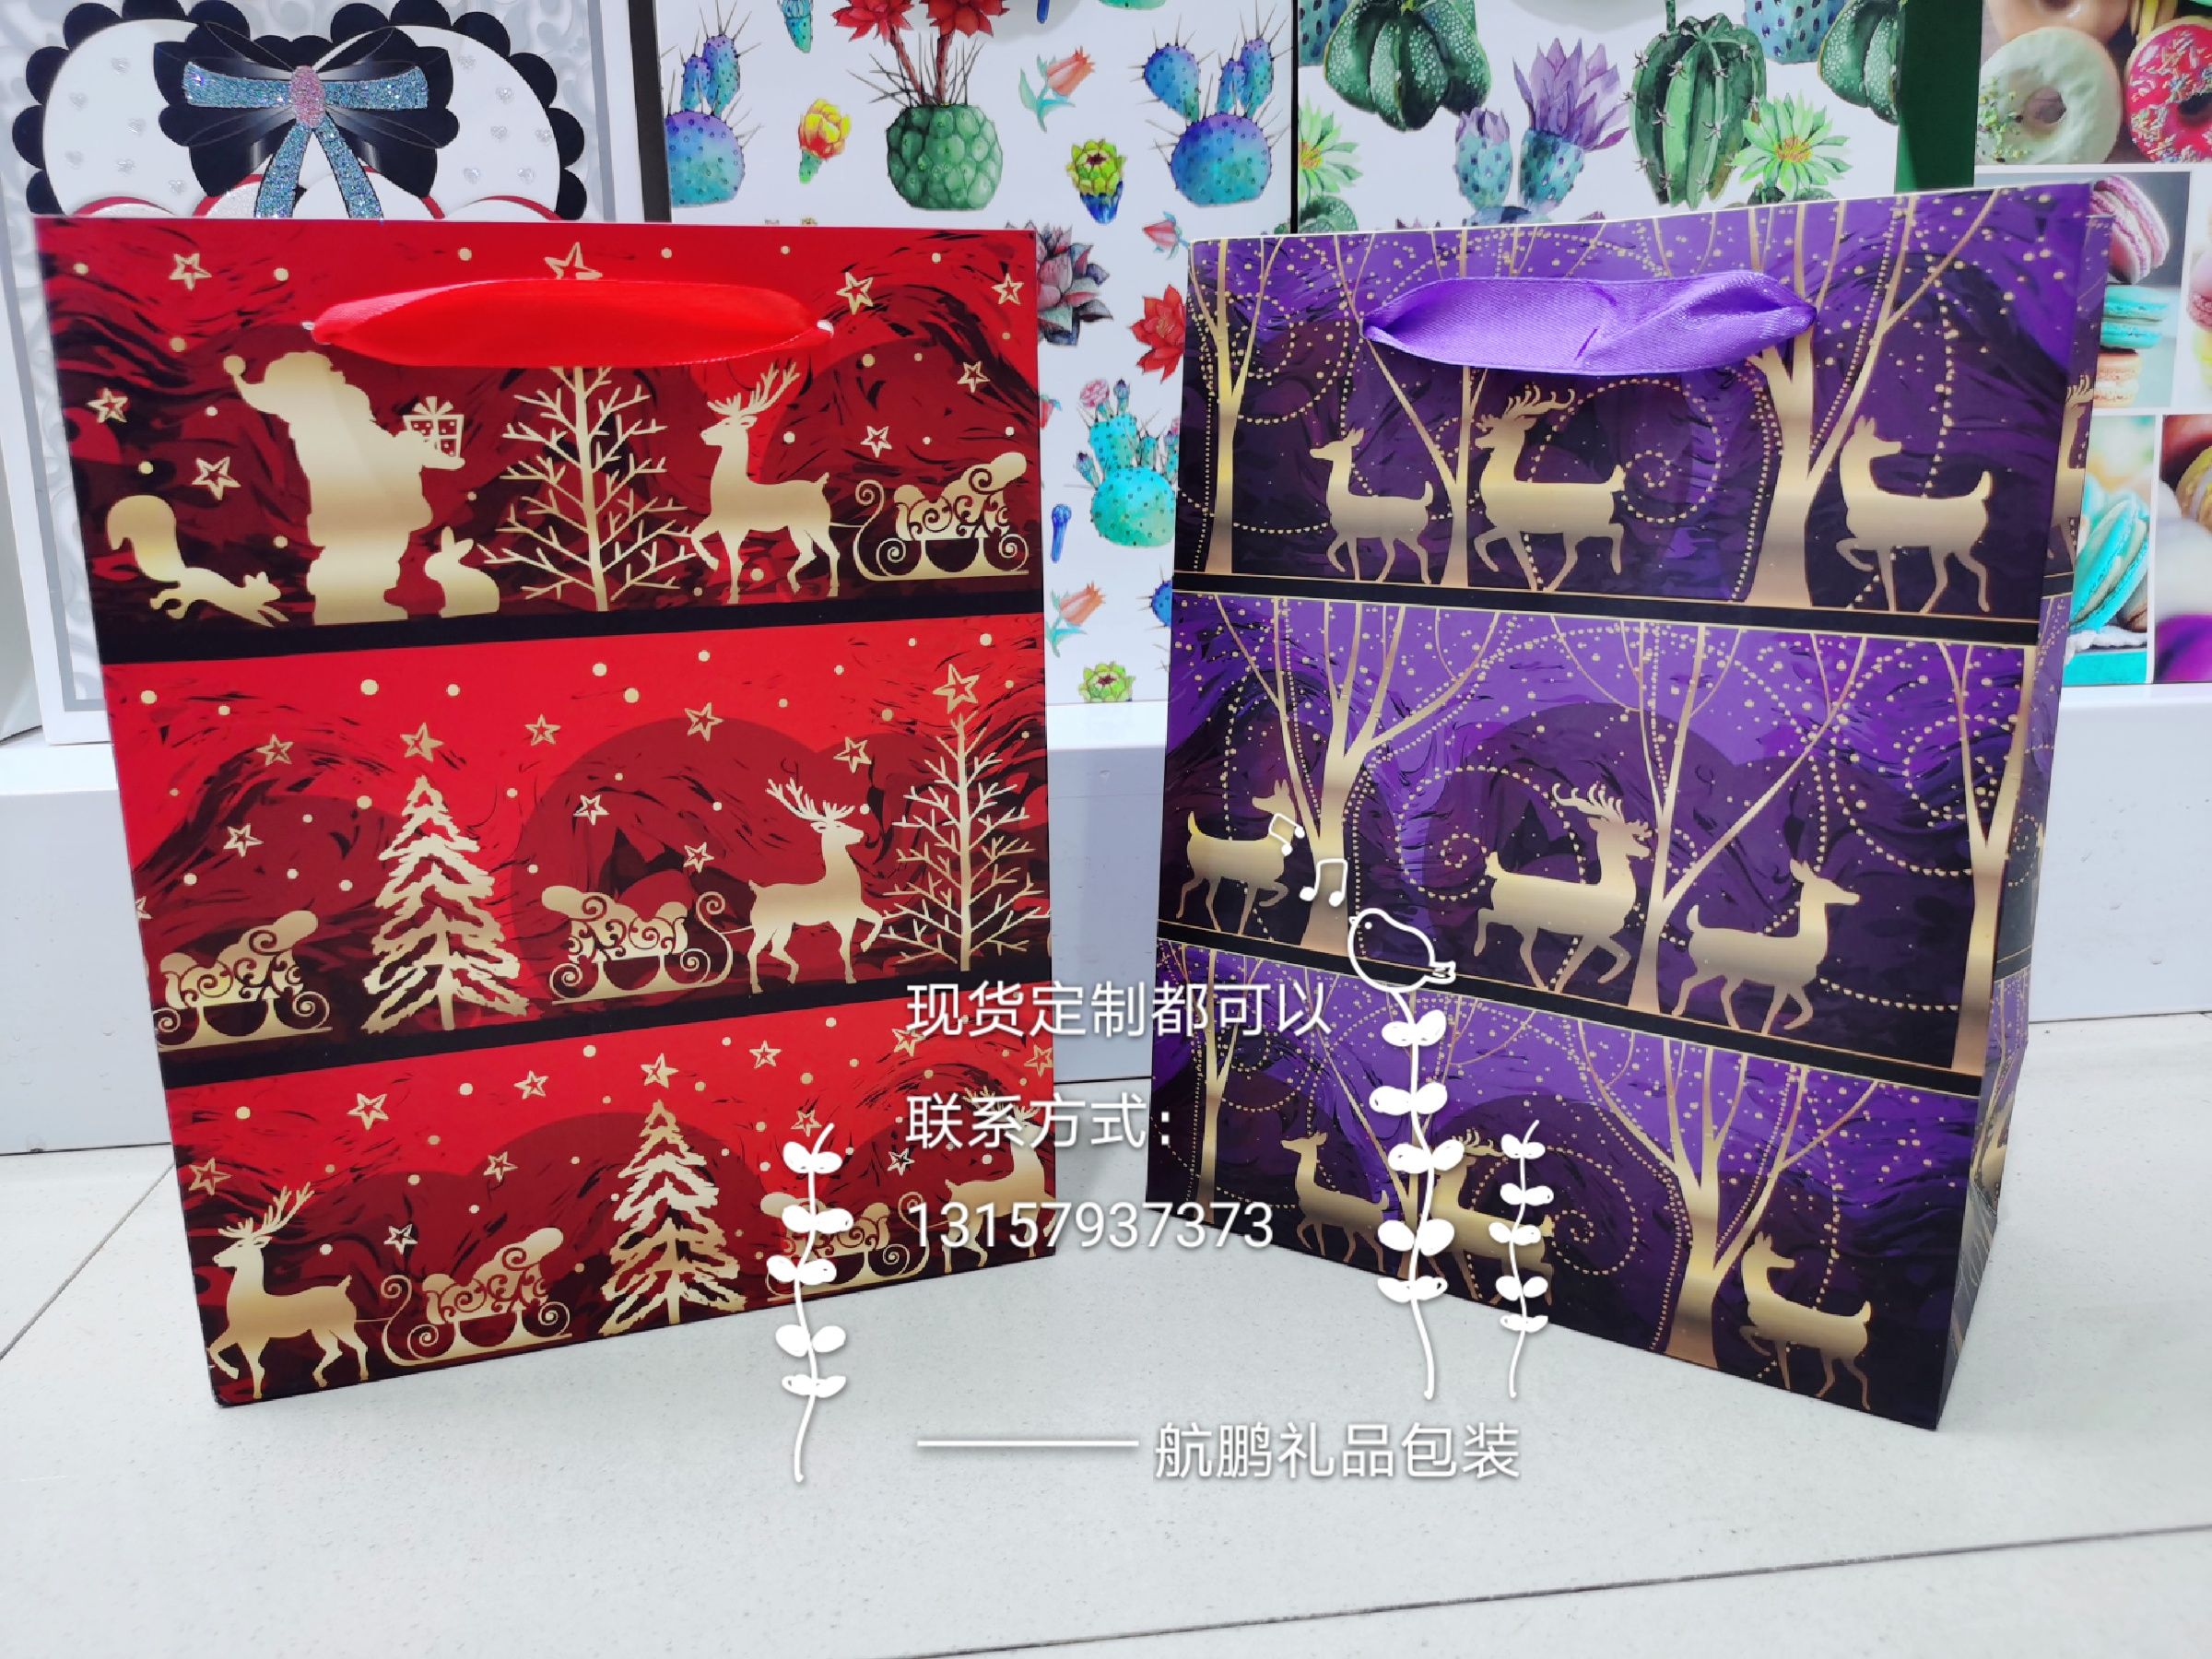 现货新款精美圣诞节礼物包装袋 平安夜苹果盒 圣诞专用礼品袋